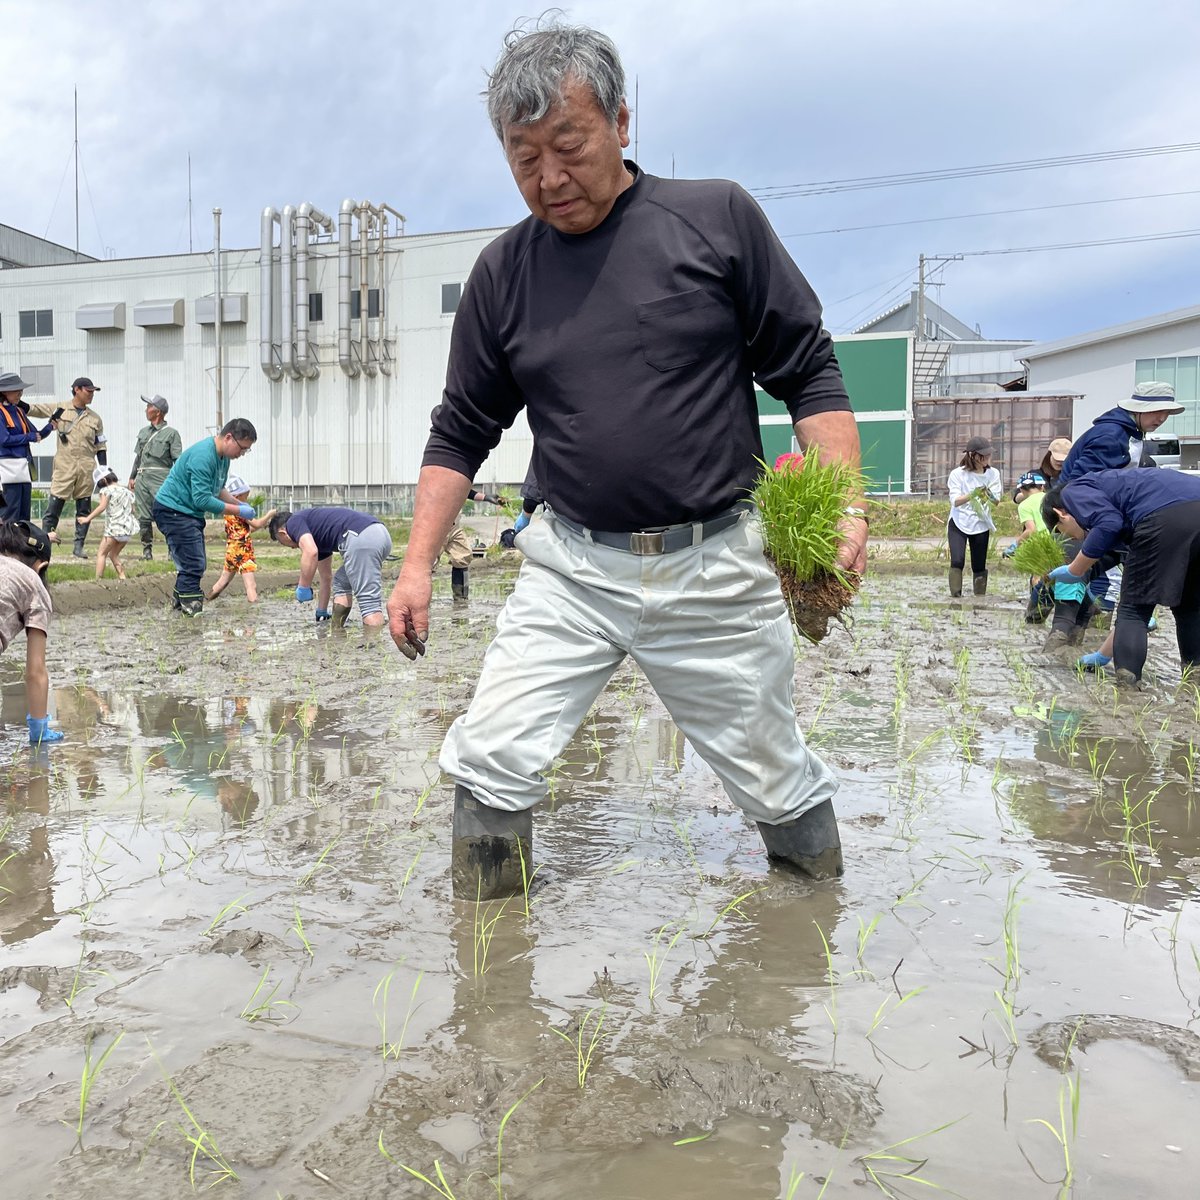 泥と奮闘する菊水社員たち
#田植え #菊水酒造